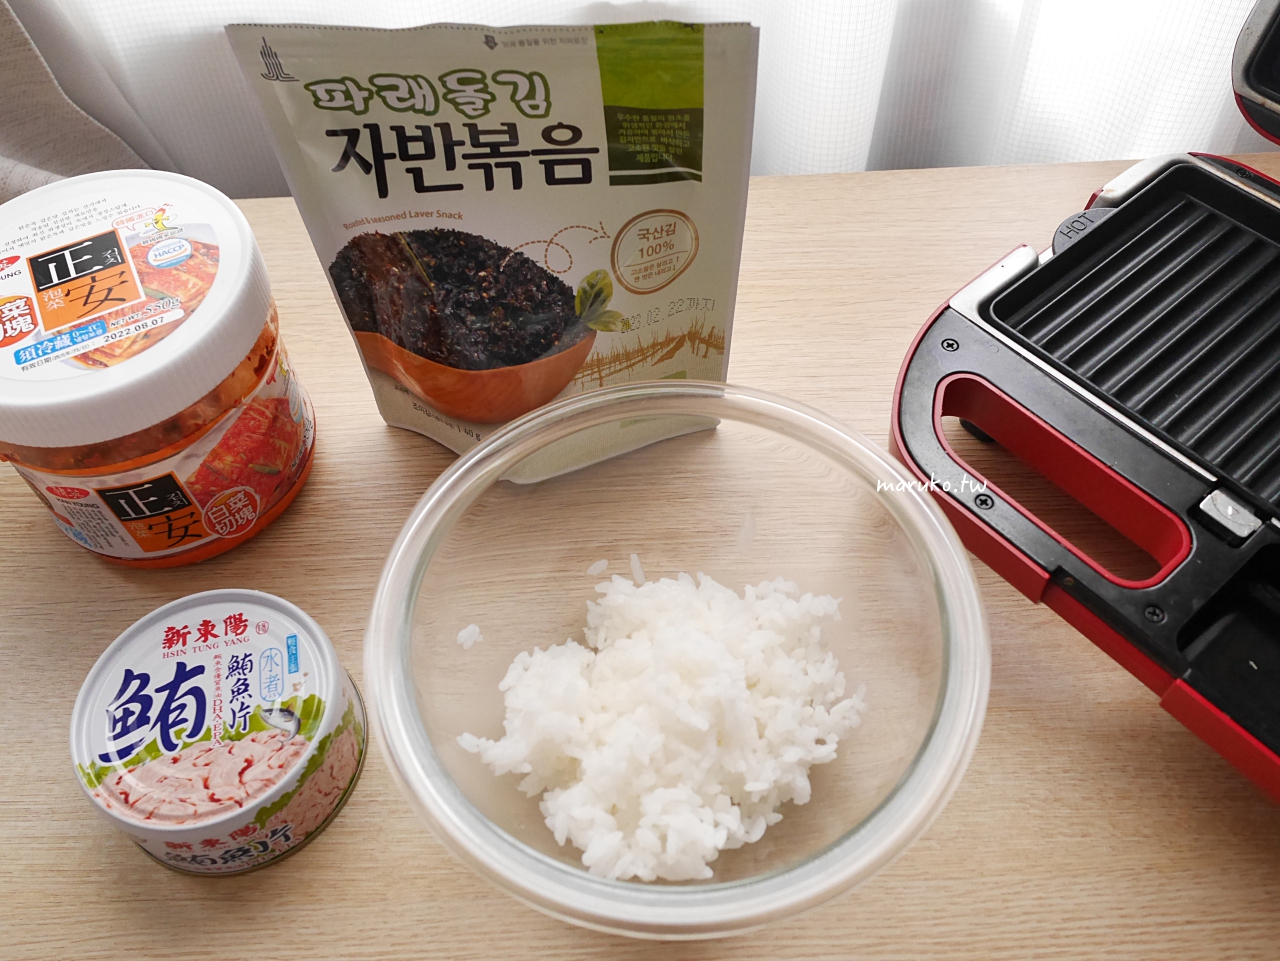 【食譜】泡菜鮪魚米漢堡 5分鐘上菜 韓式海苔拌飯米漢堡這樣做 @Maruko與美食有個約會